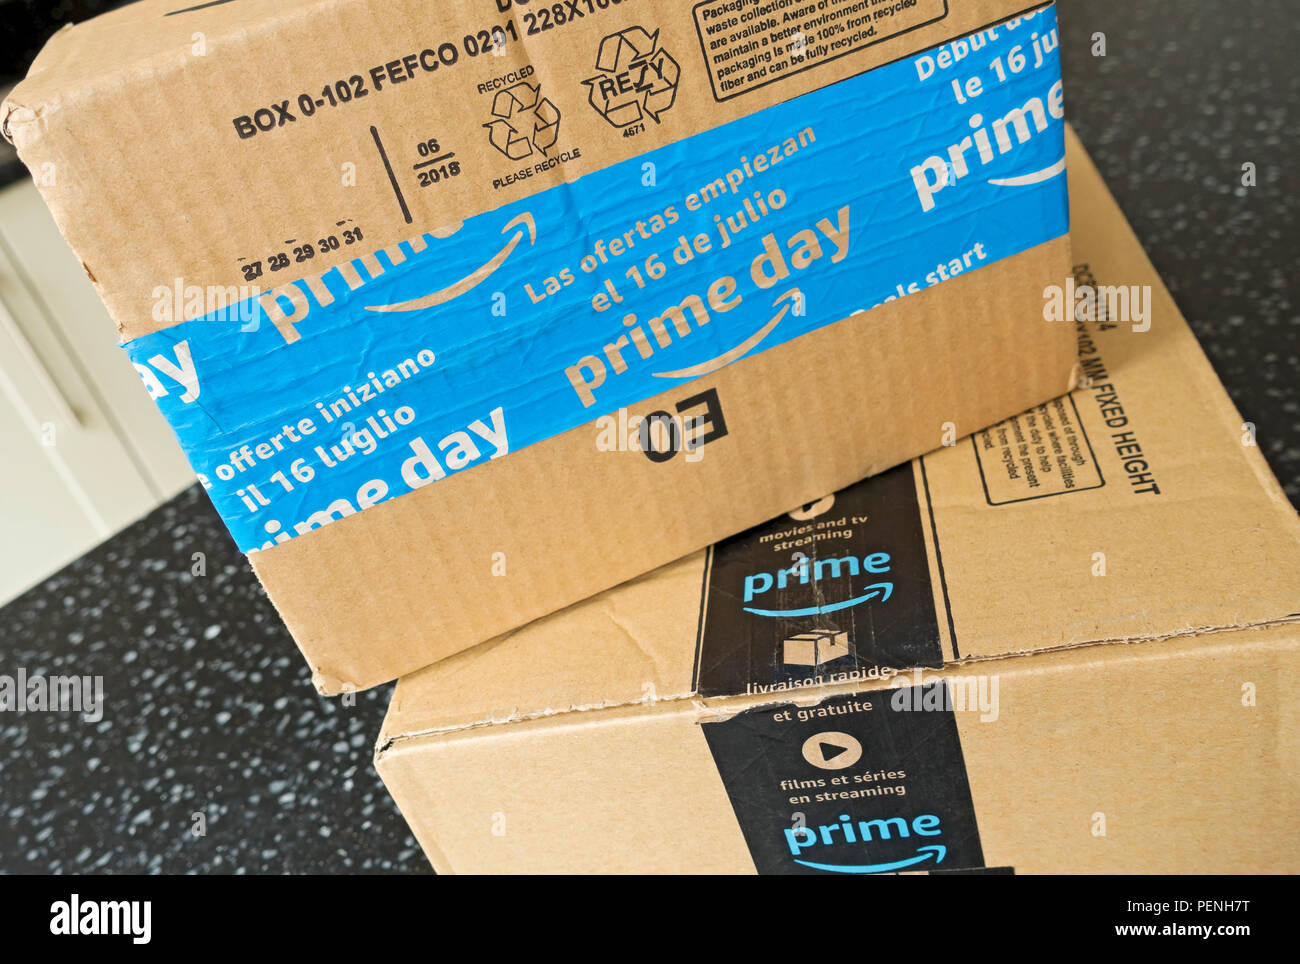 Nahaufnahme von Amazon prime box Boxen Pakete Paket nach Hause  Einkaufsversand England UK Vereinigtes Königreich GB Großbritannien  Stockfotografie - Alamy